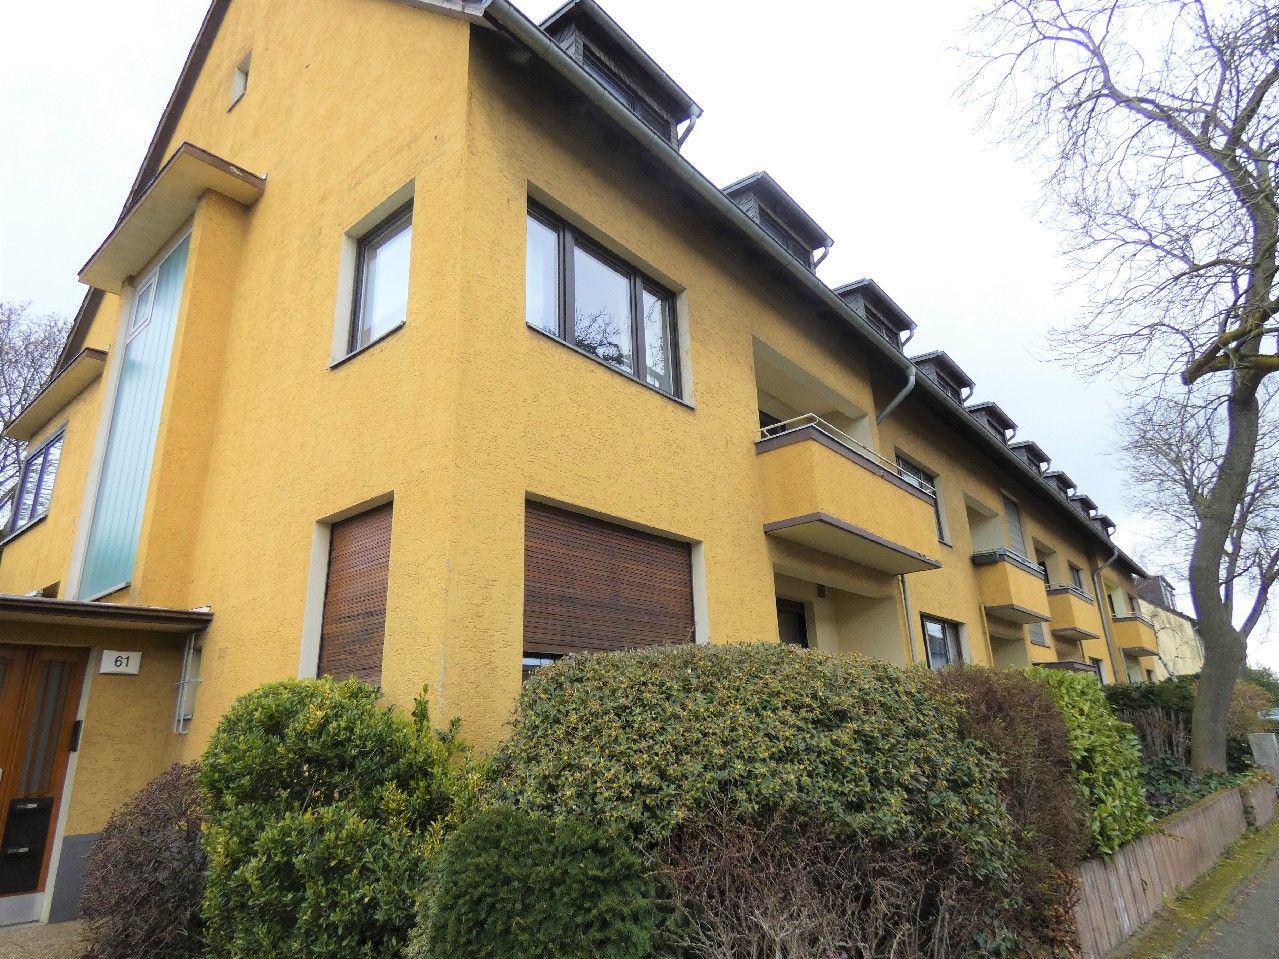 Tolle Zahlen für Familien: 130 m², 5 Zimmer, 2 Etagen und 1 großer Garten in Meerbusch-Büderich.